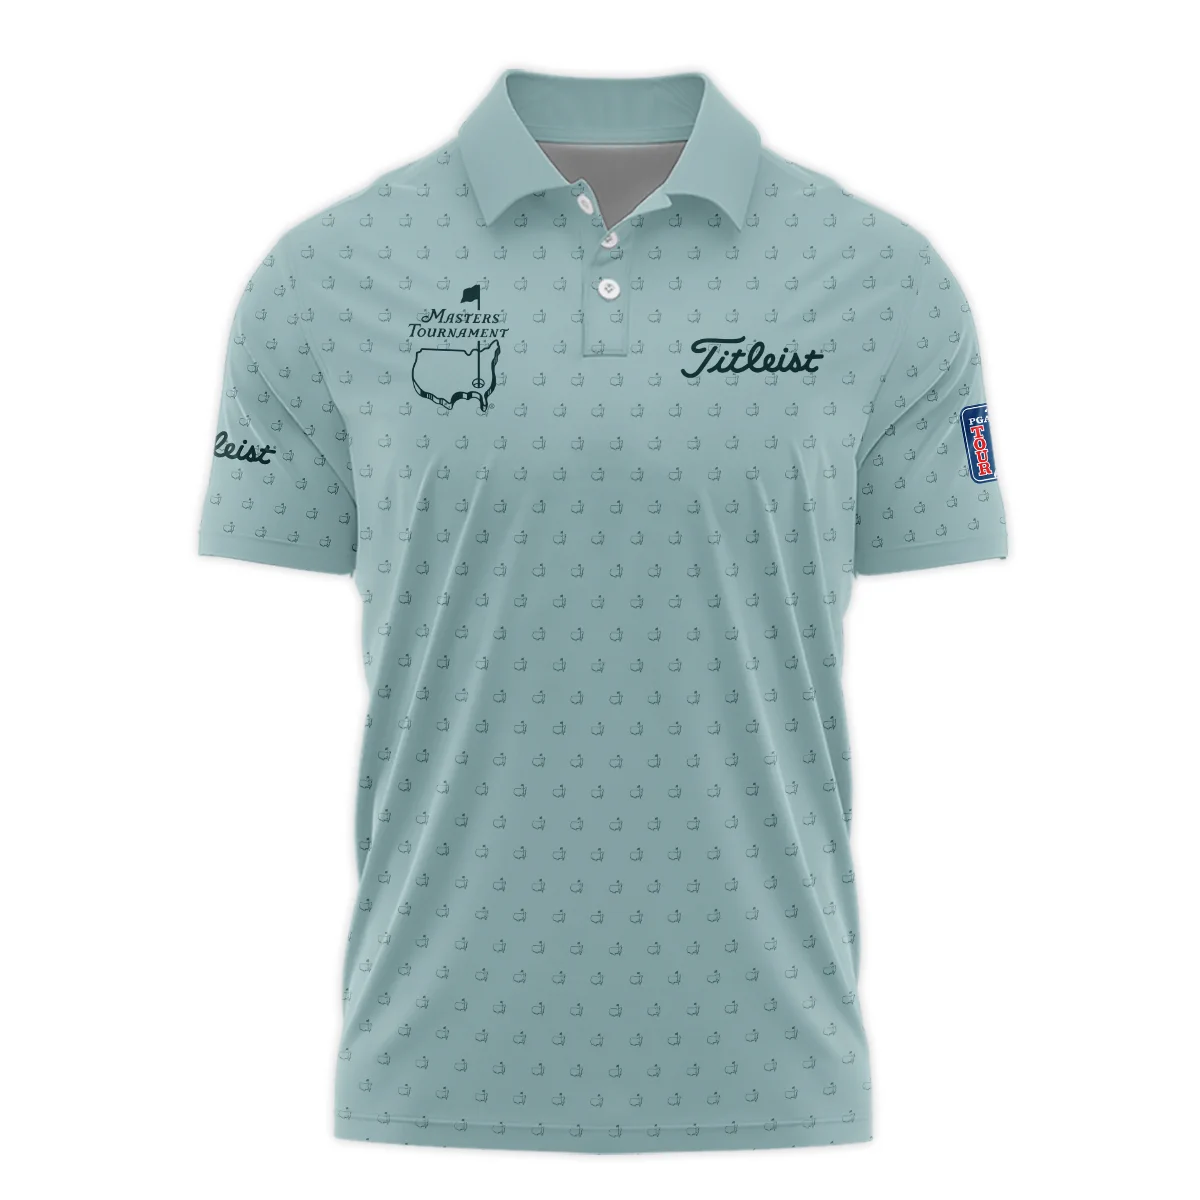 Golf Pattern Masters Tournament Titleist Zipper Hoodie Shirt Cyan Pattern All Over Print Zipper Hoodie Shirt